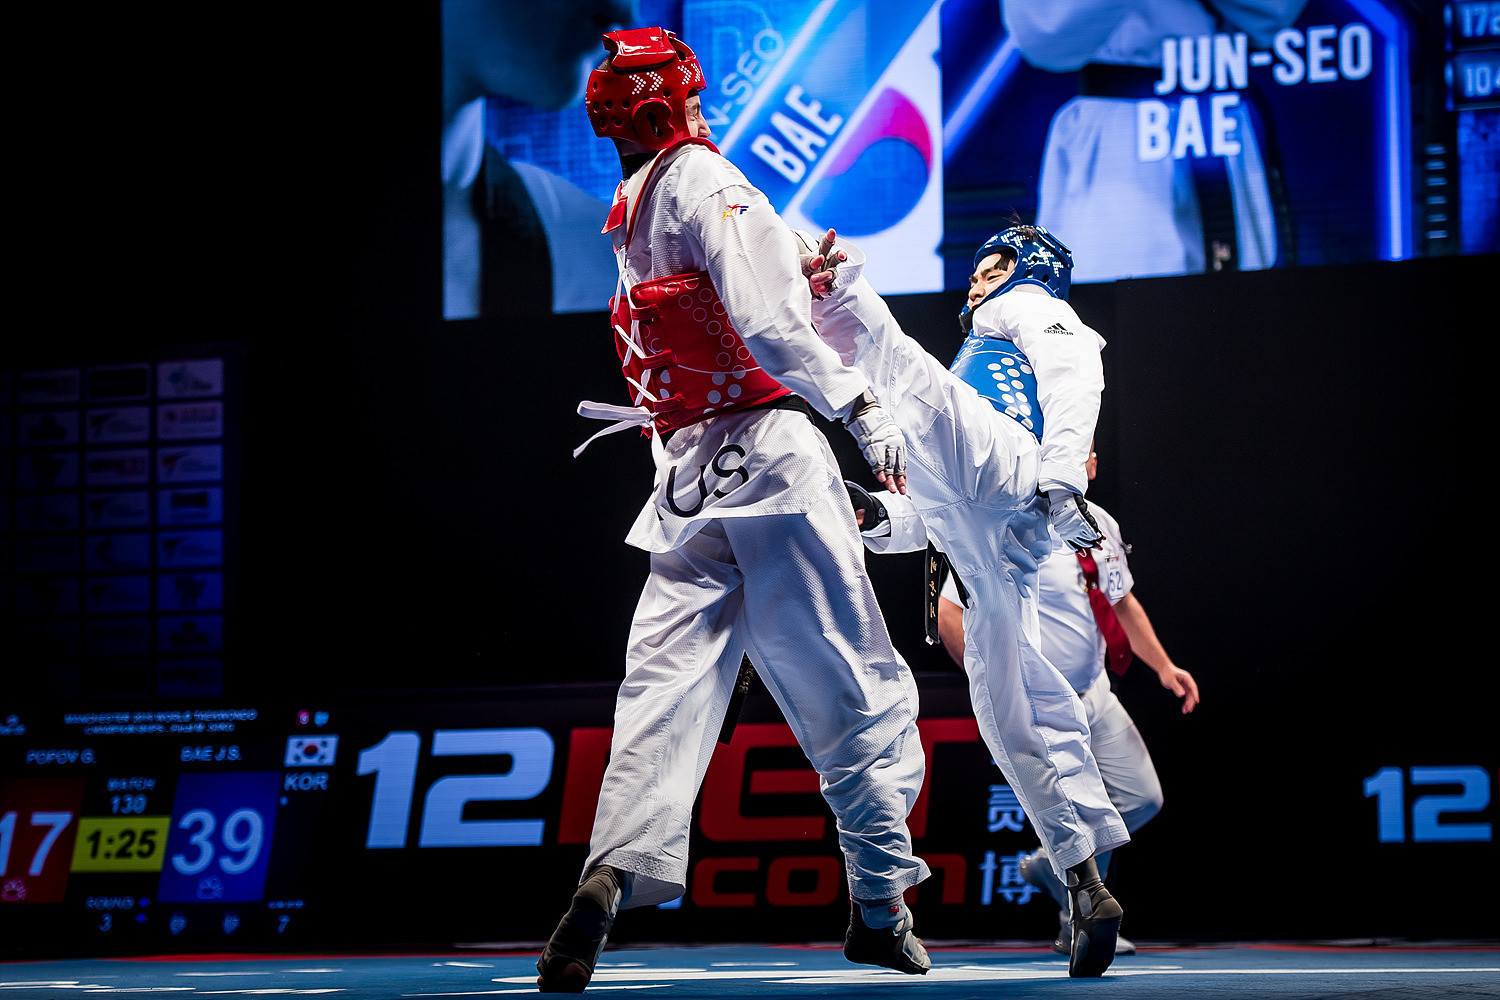 Bae Jun-seo won a maiden world title aged 18 ©World Taekwondo